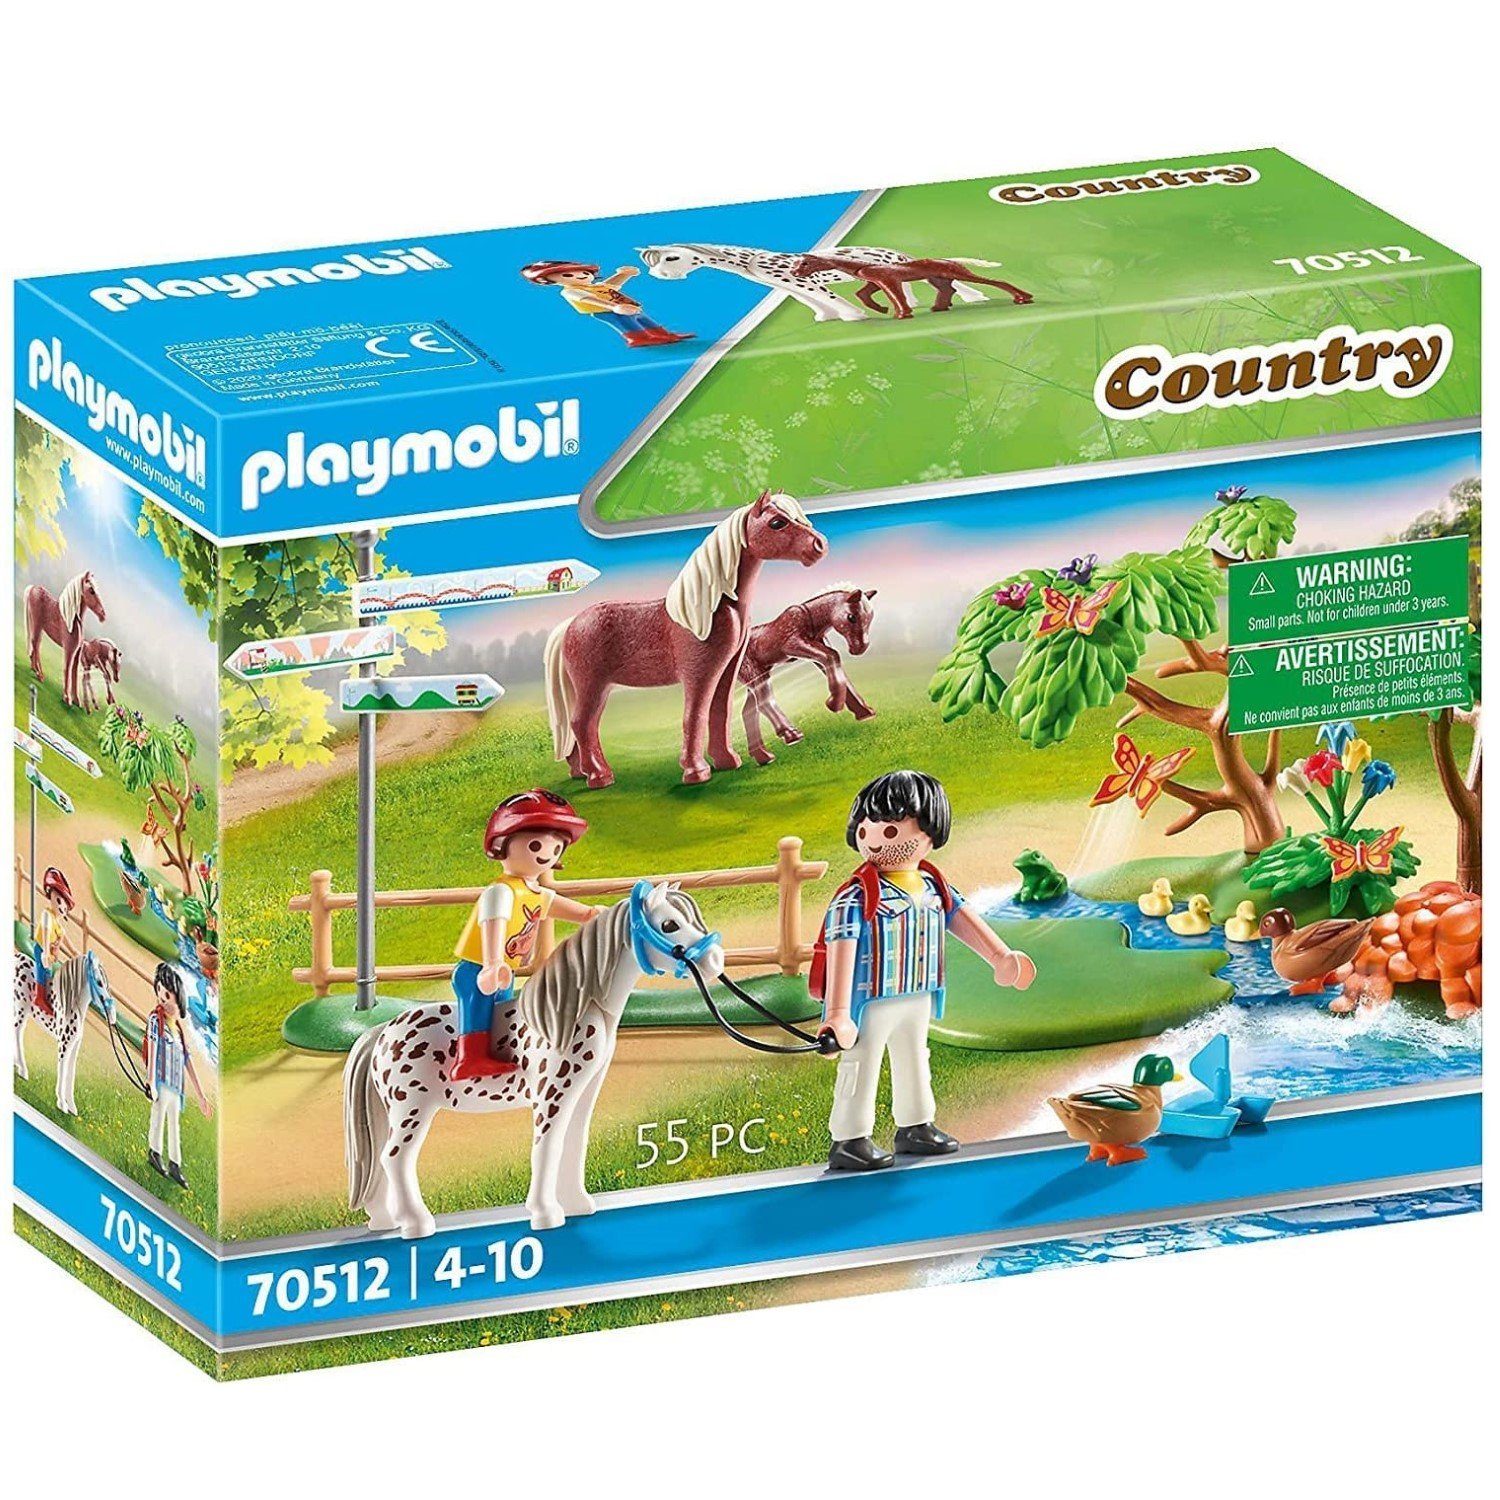 Playmobil® Spielwelt Playmobil Country Fröhlicher Ponyausflug 70512, Pferd  Reiter Figuren Spiel-Set Pferde Reiterhof Zubehör Spielzeug-Set,  55-teiliges Spielfiguren-Set: 2 Figuren, 3 Pferde, 50 Zubehörteile